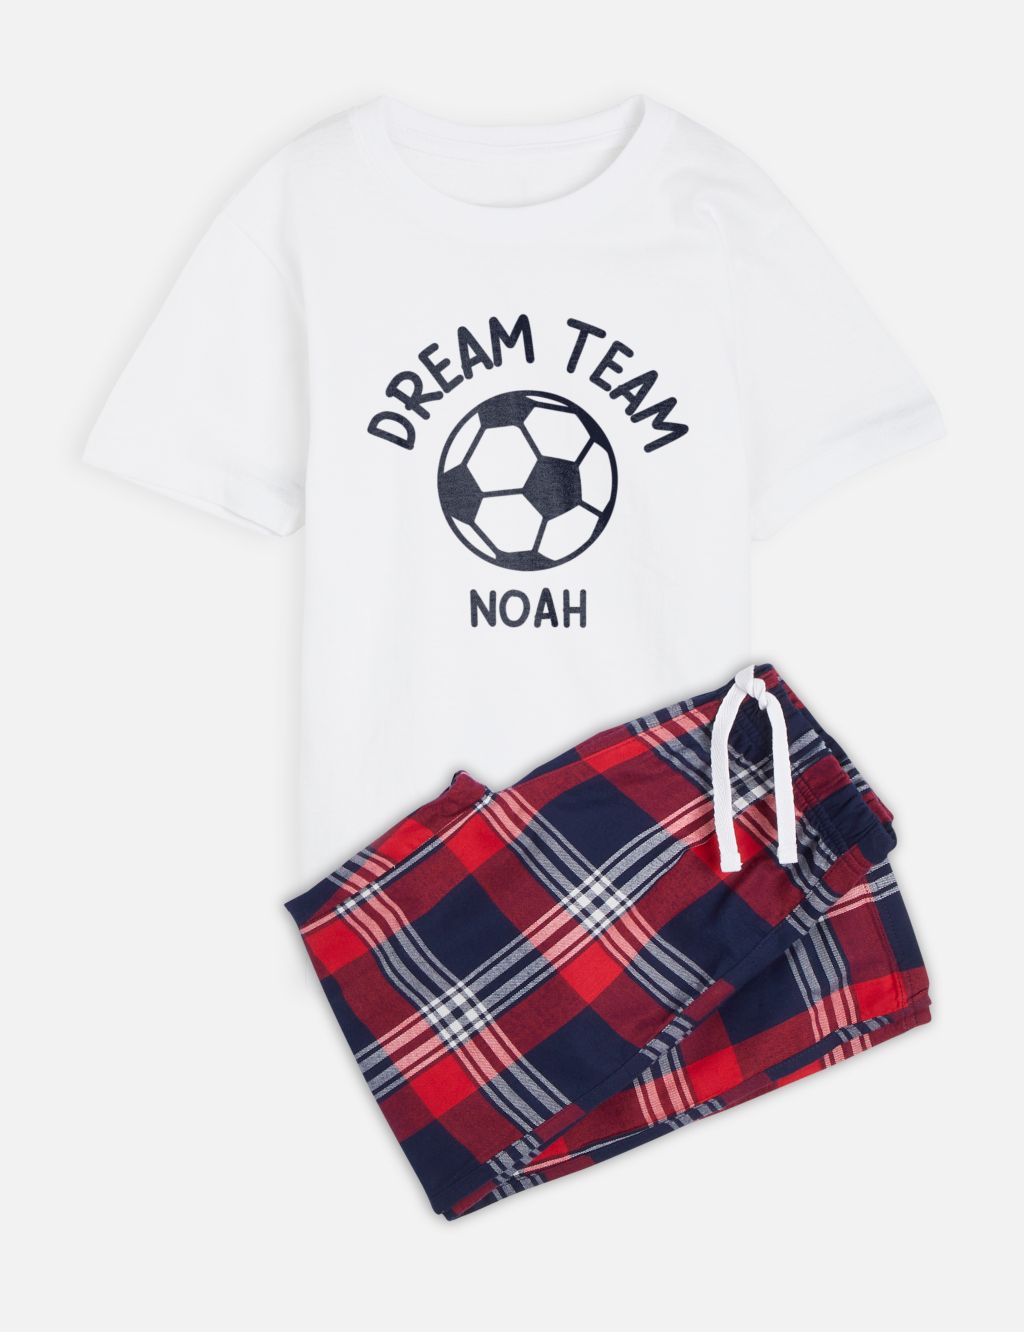 Personalised Kid's Football Pyjamas 3 of 3